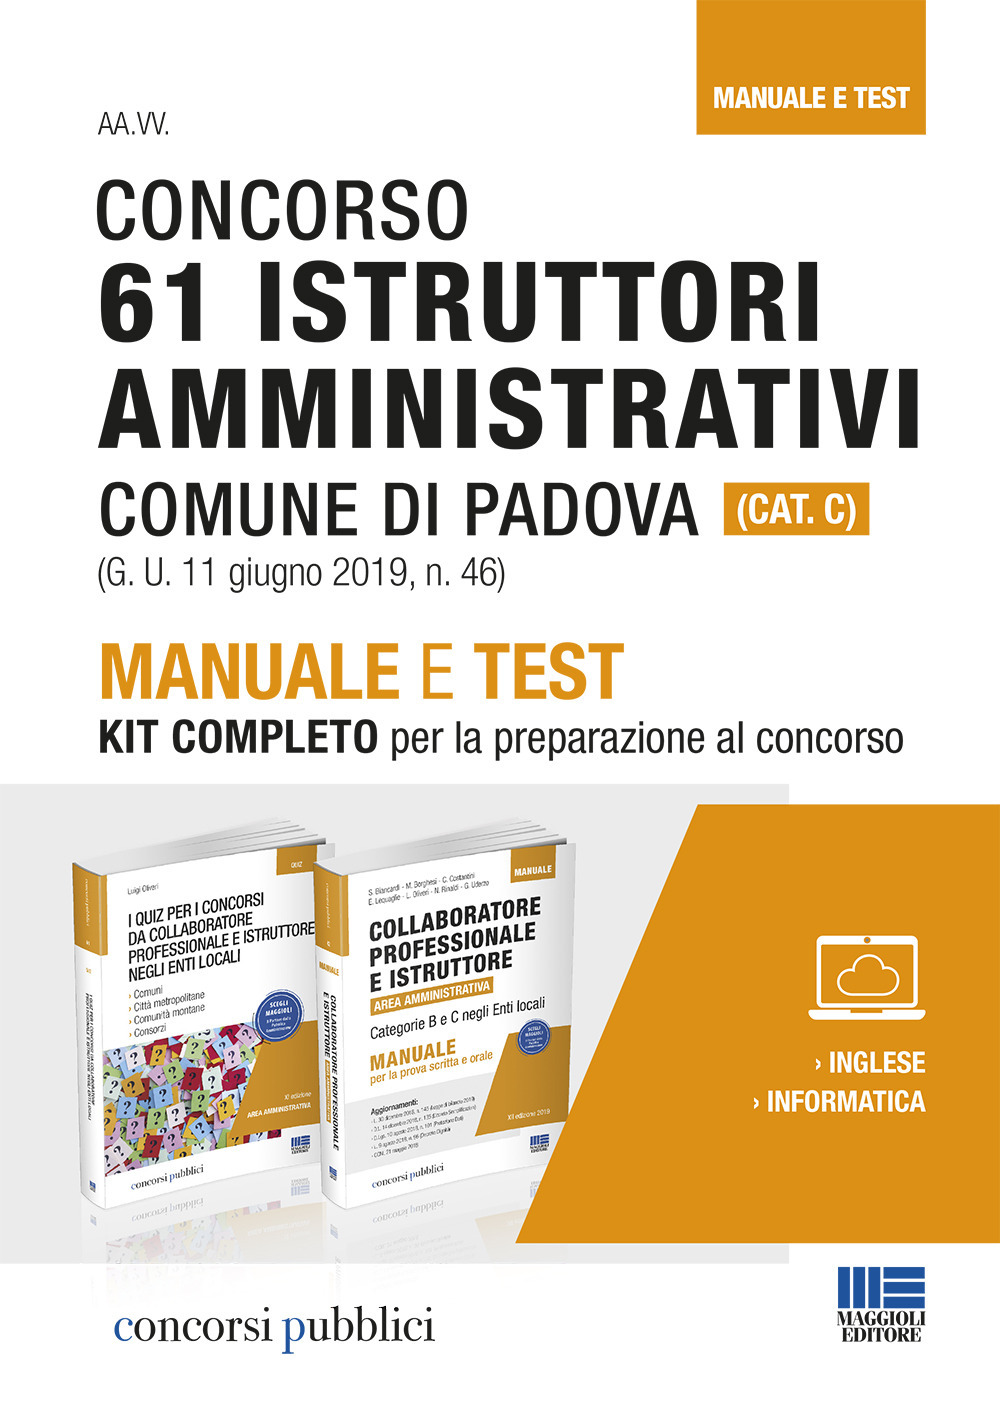 Concorso 61 Istruttori amministrativi comune di Padova